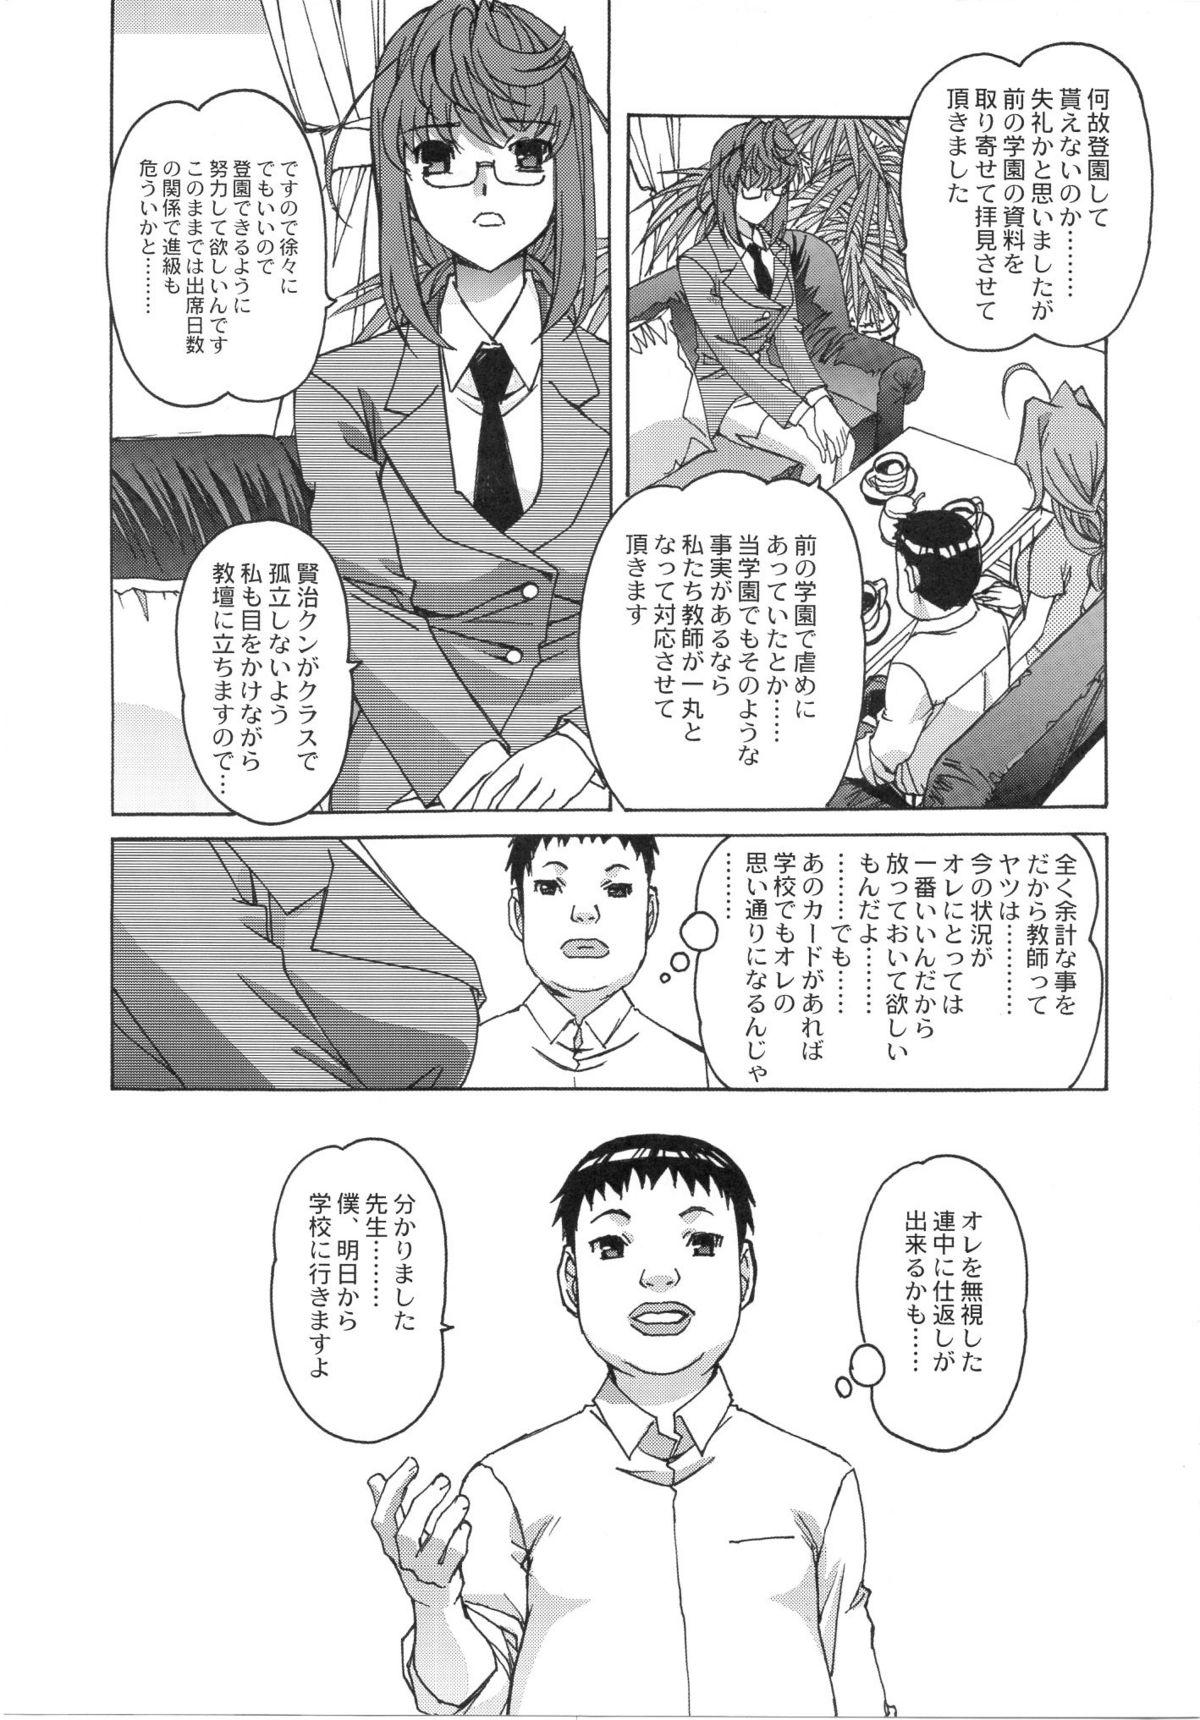 Argenta Otonano Do-wa Vol. 24 Casada - Page 6